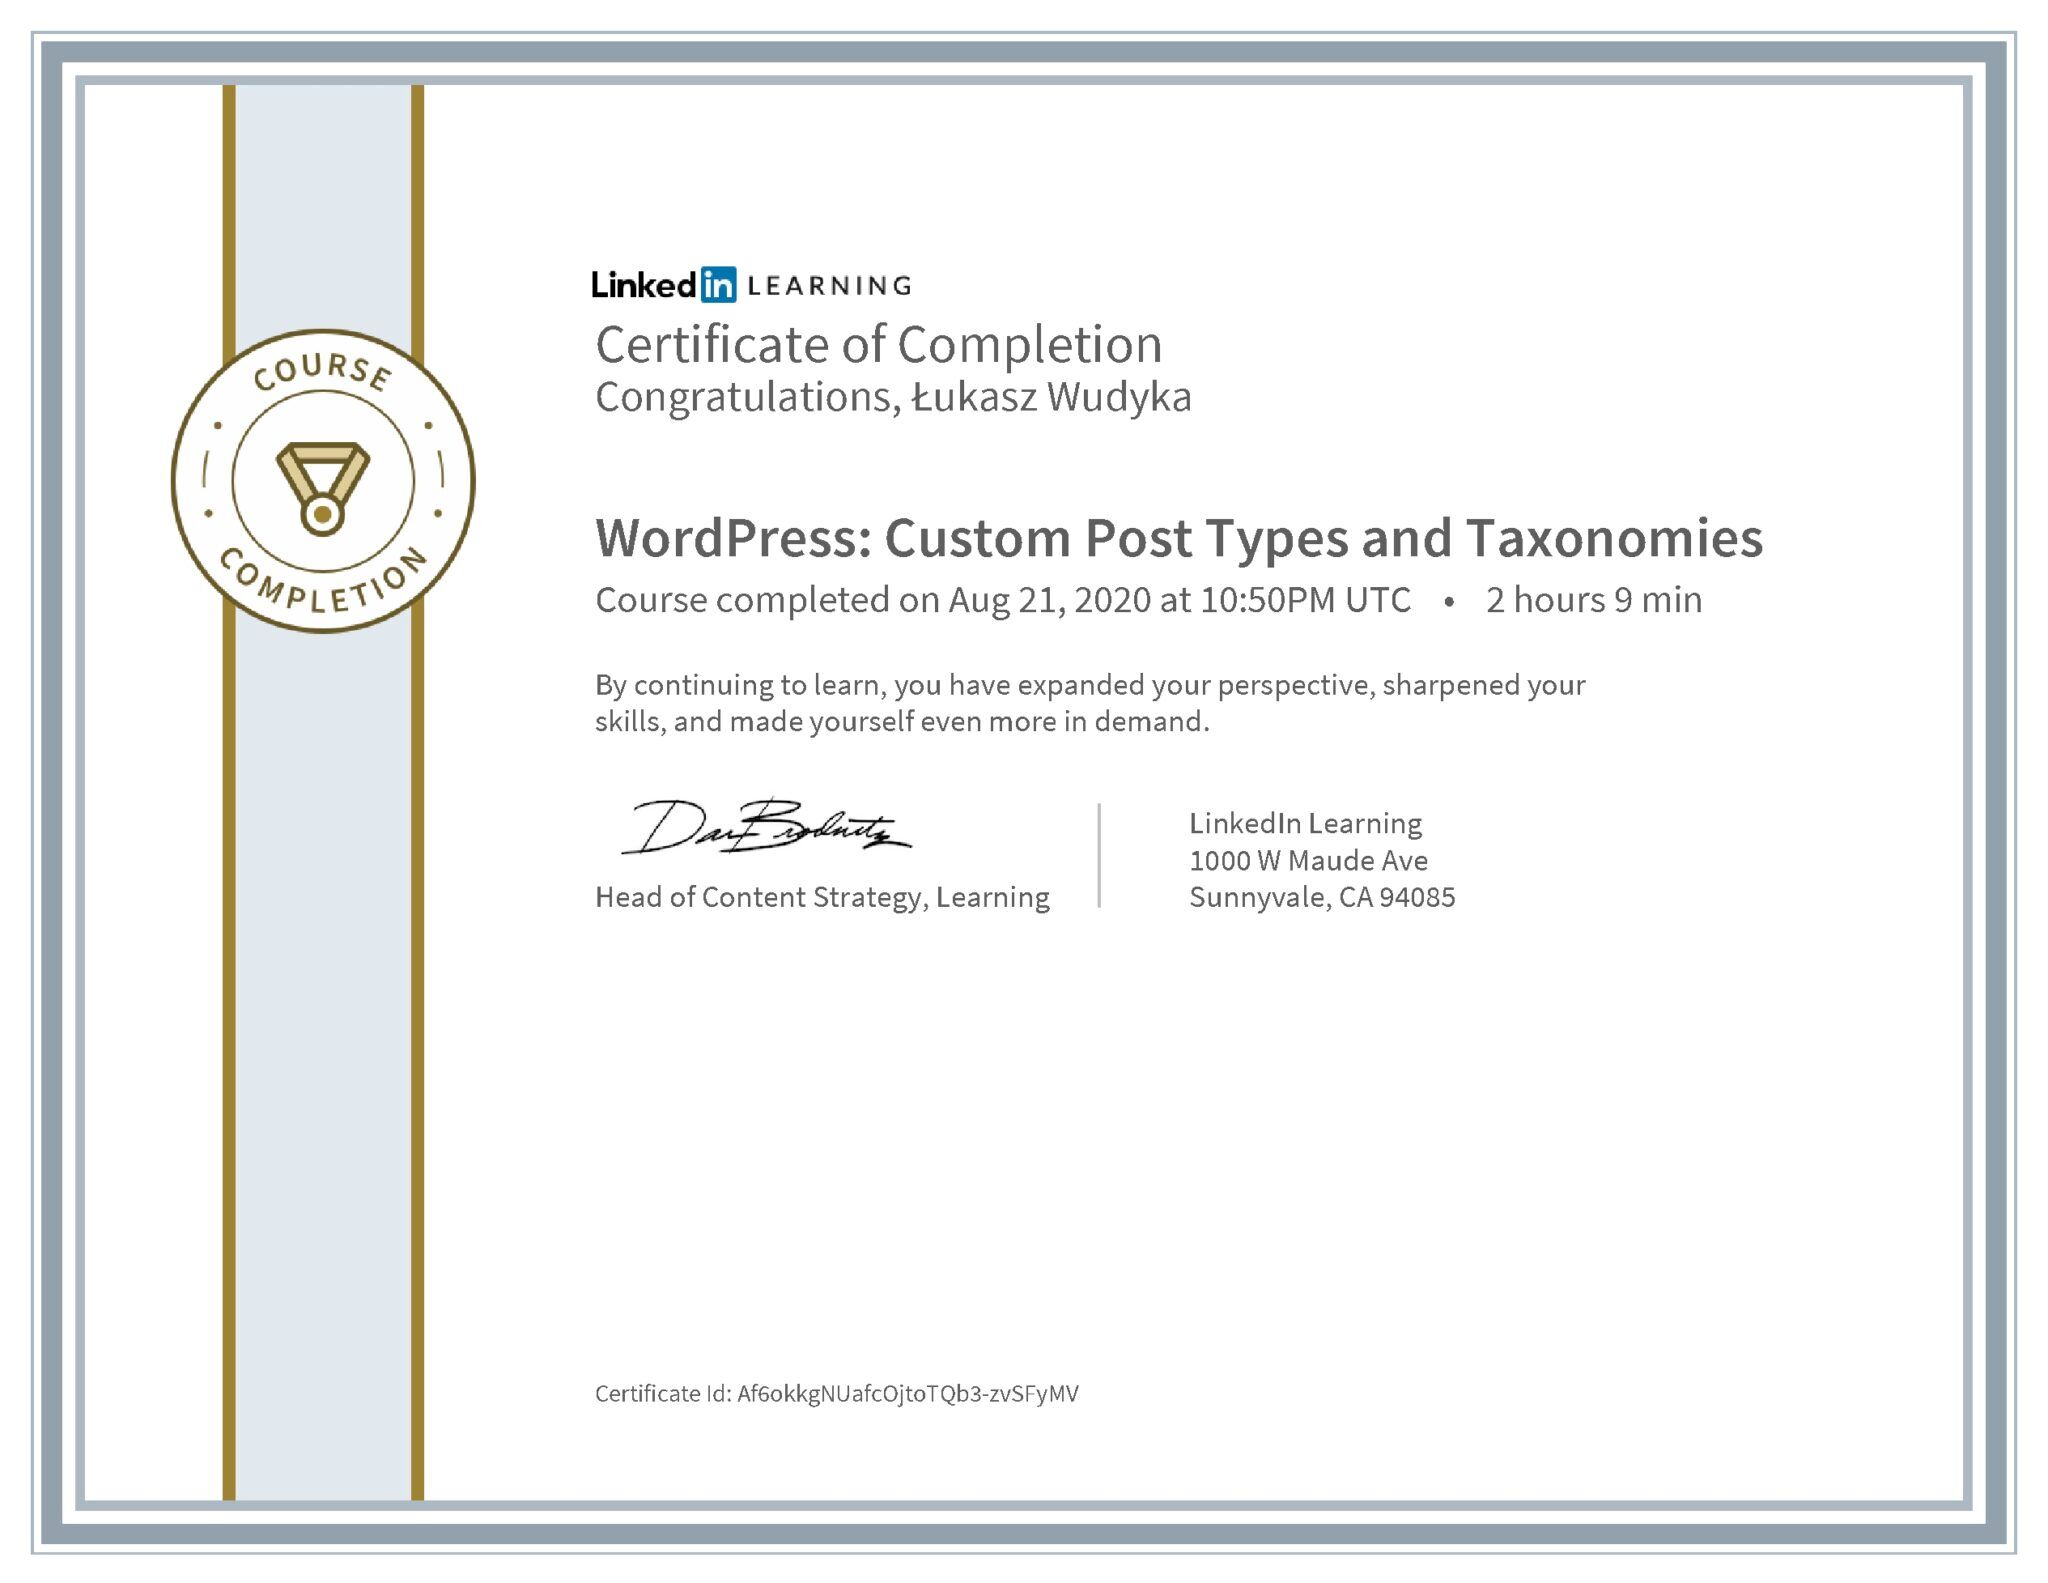 Łukasz Wudyka certyfikat LinkedIn WordPress: Custom Post Types and Taxonomies